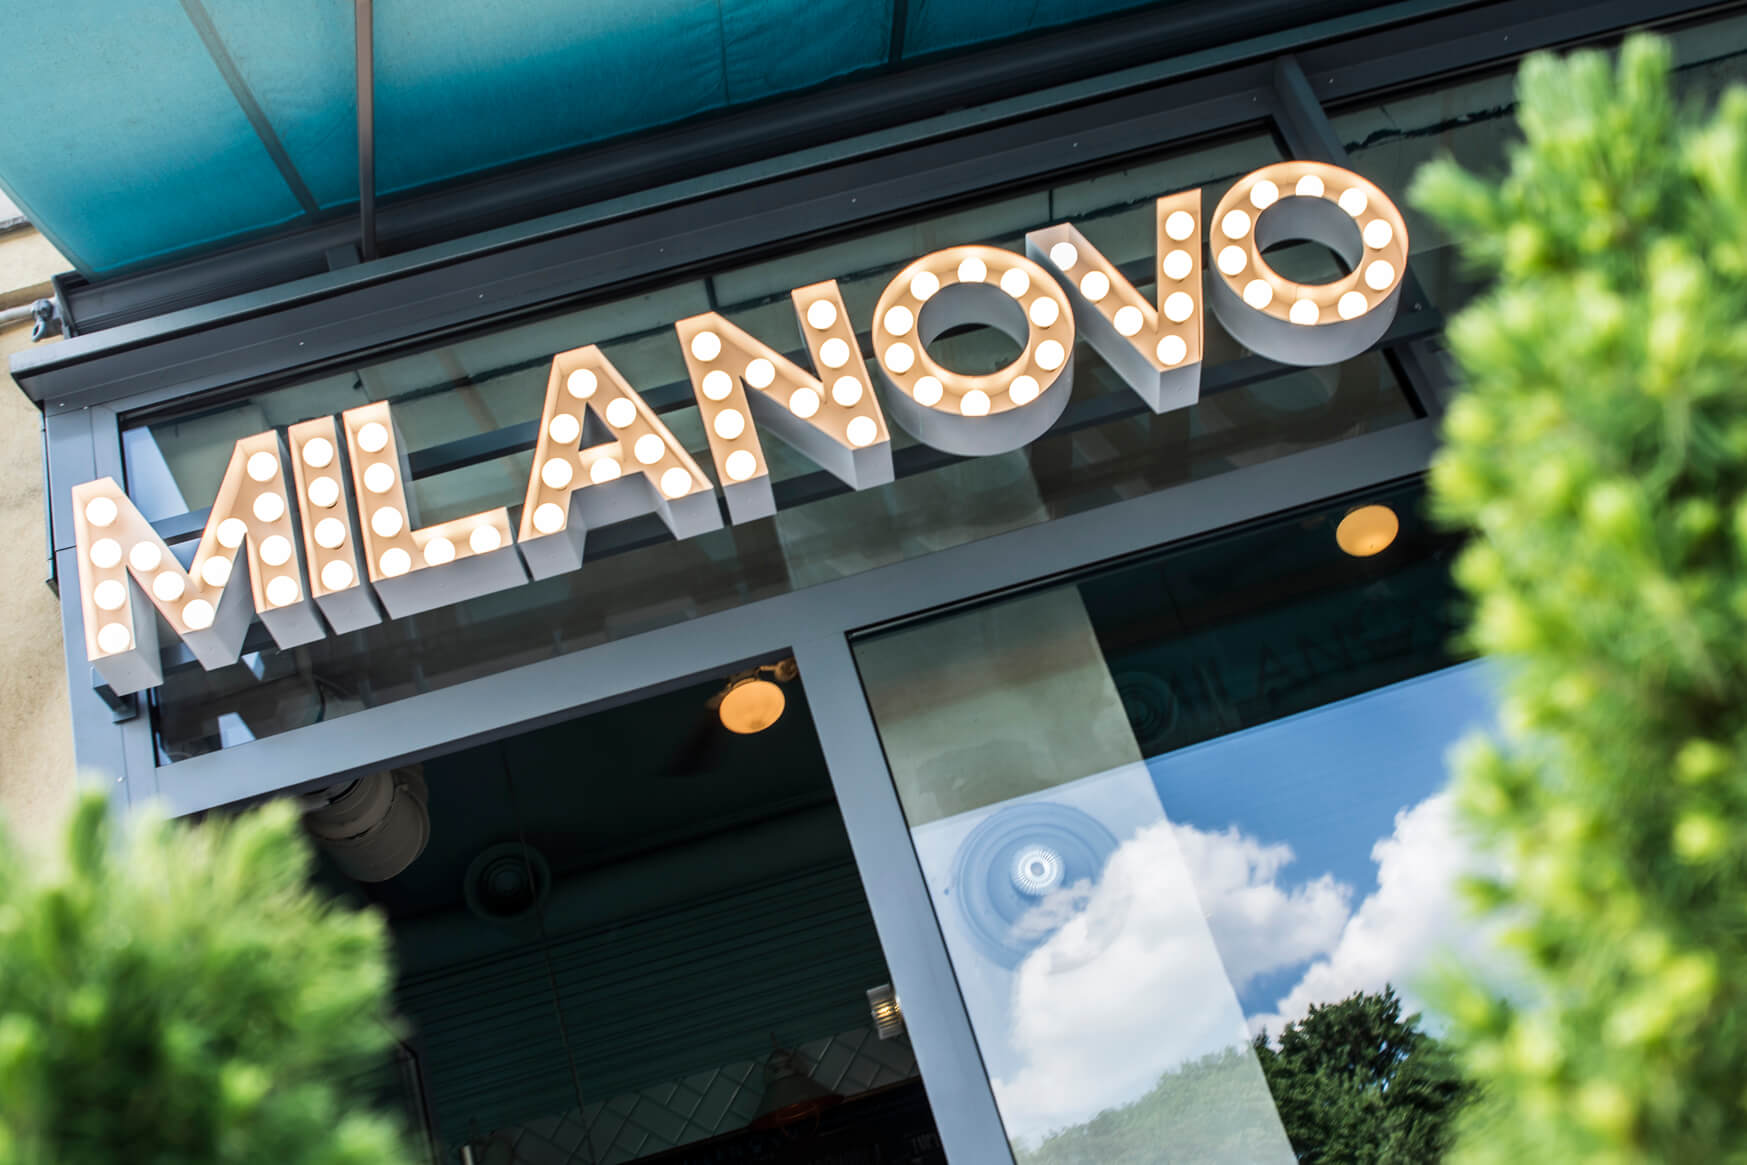 MILANOVO - MILANOVO - letras con bombillas sobre la entrada del restaurante